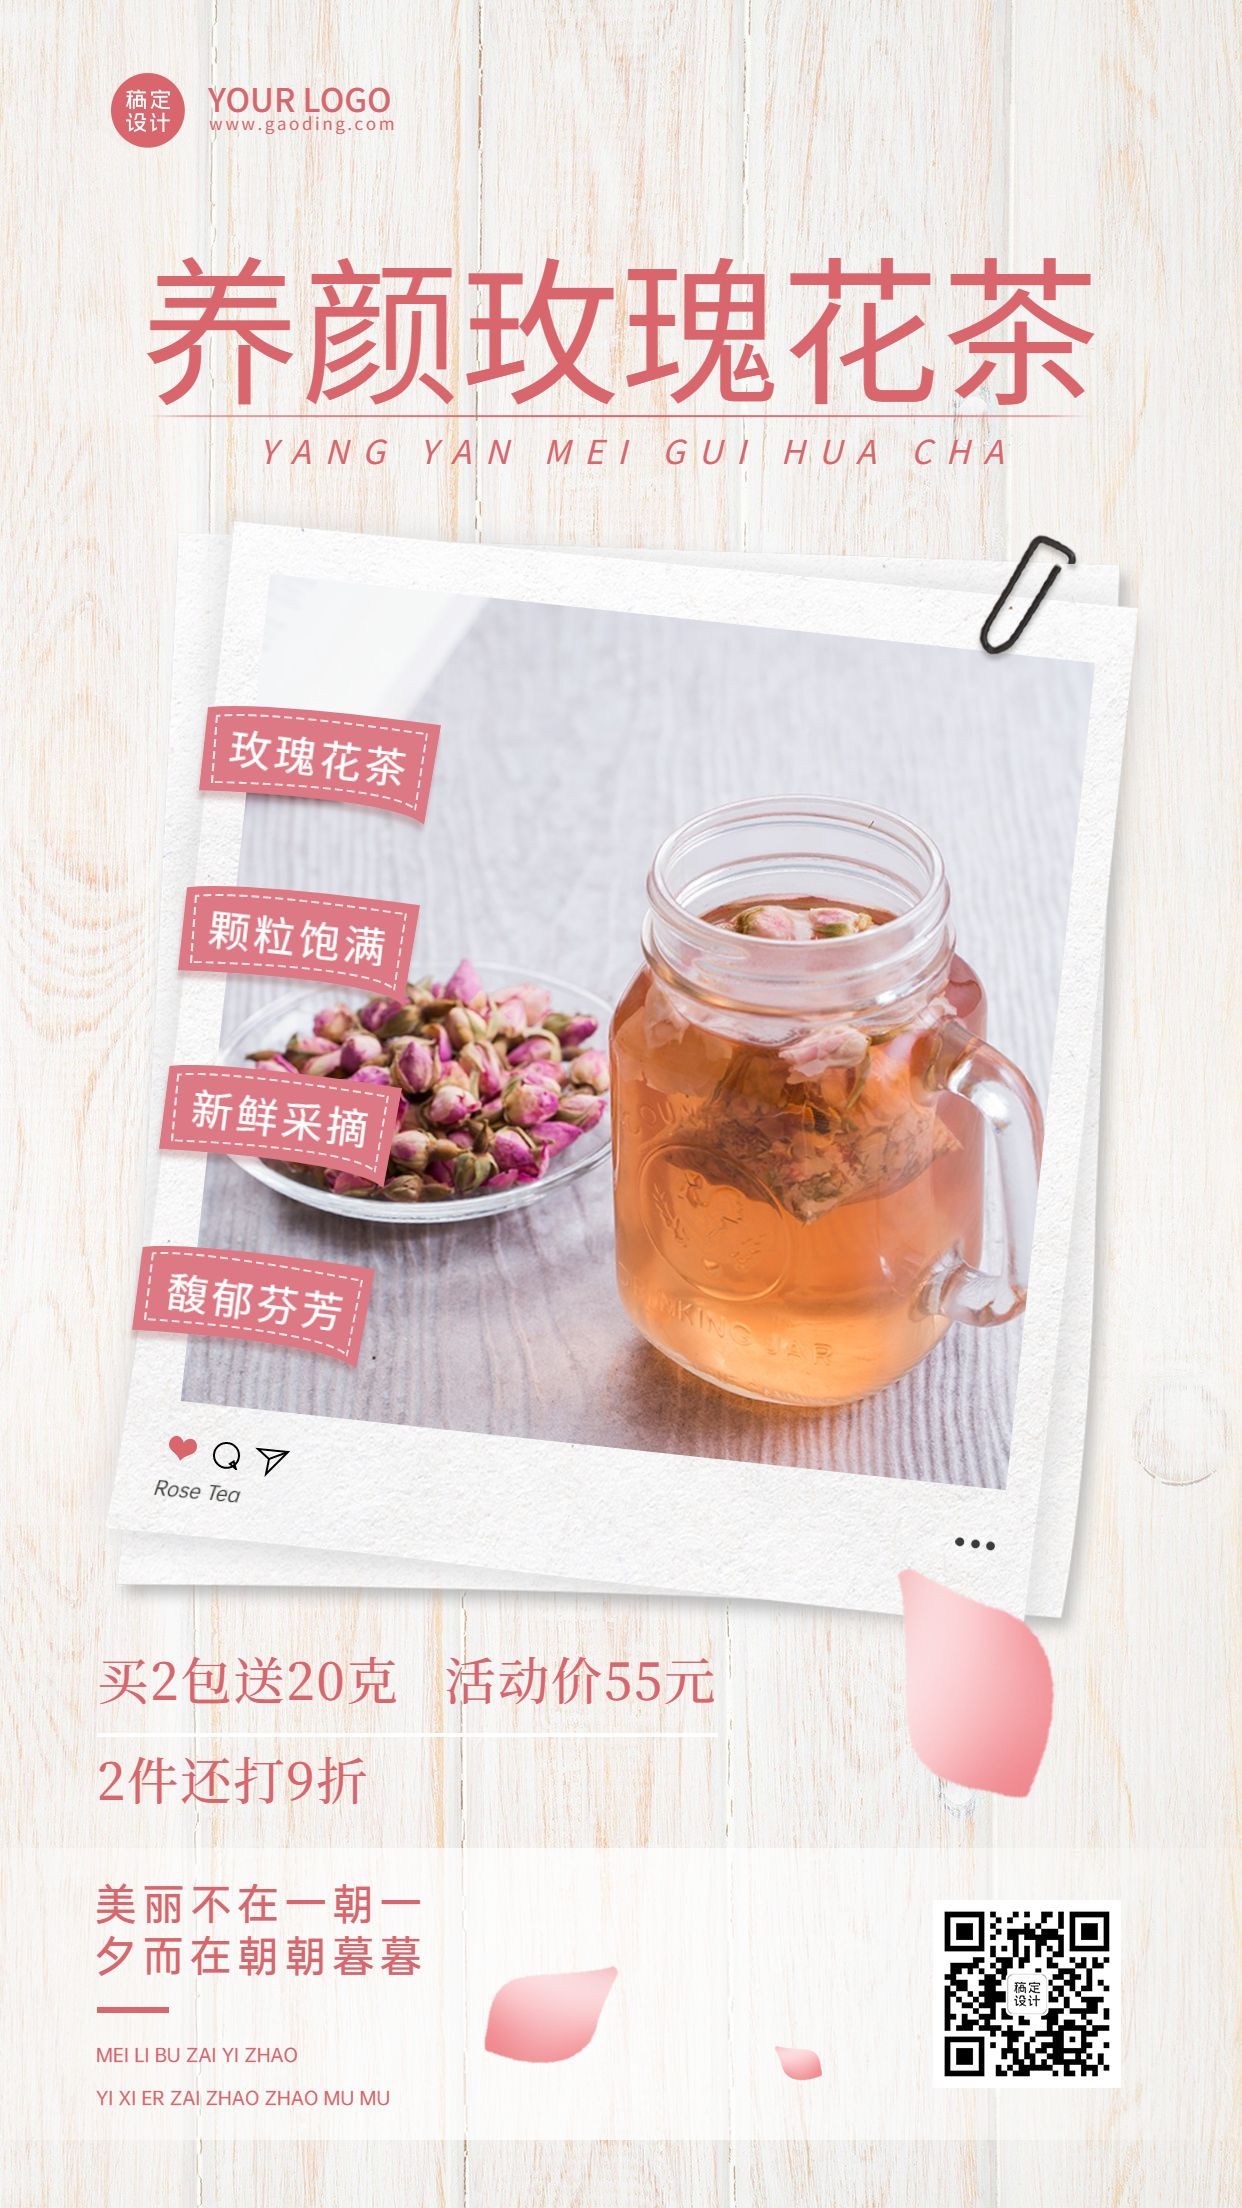 养生茶保健食品产品展示营销手机海报预览效果